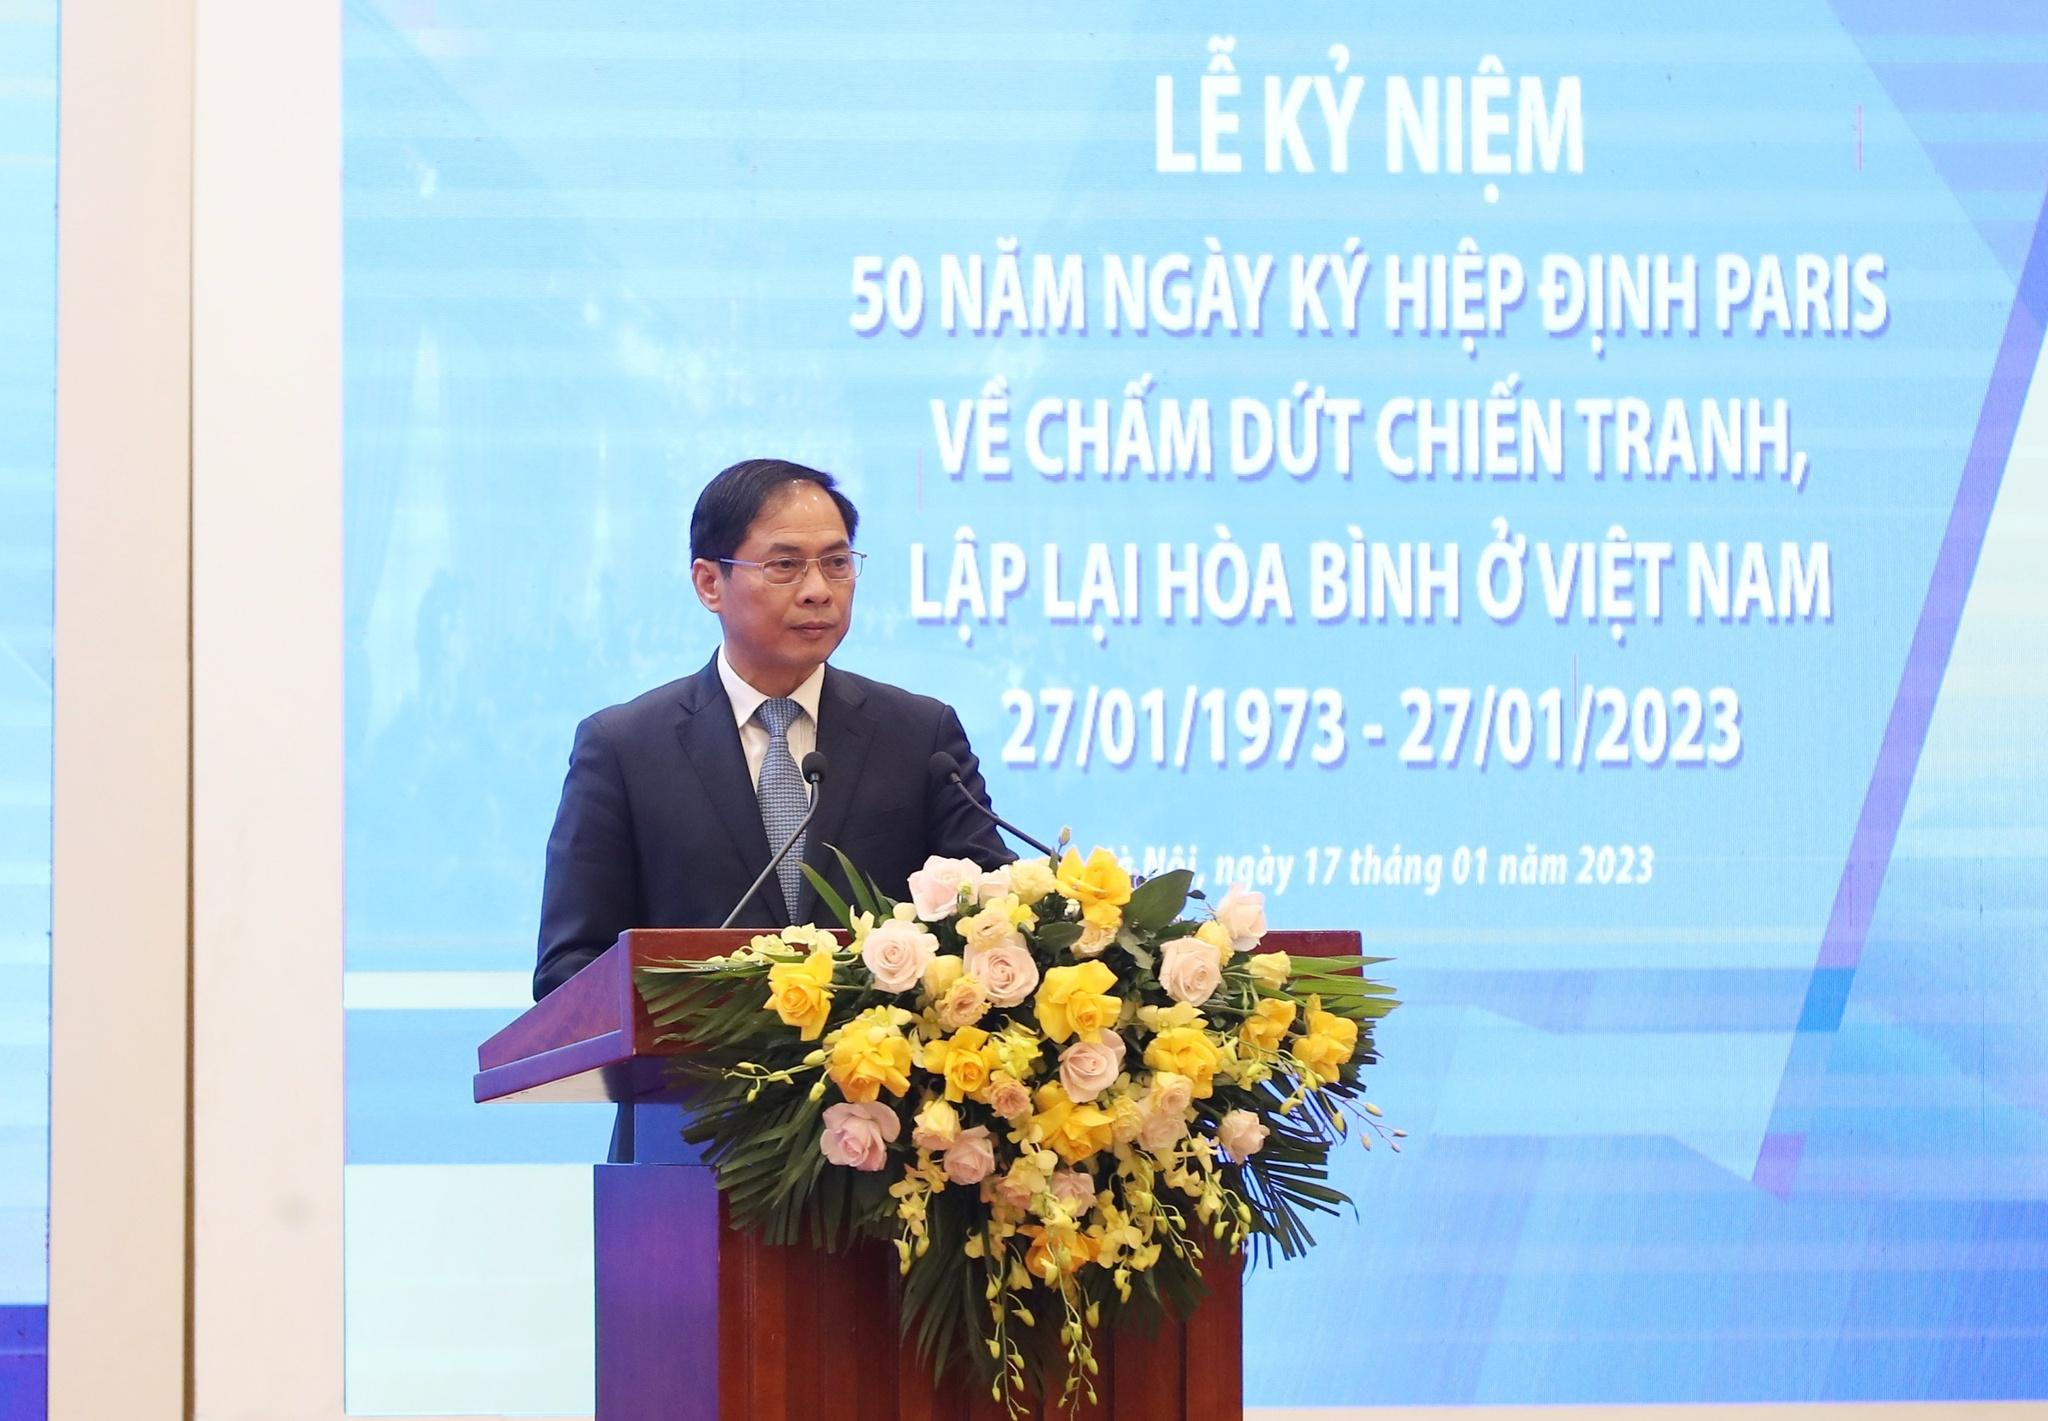 Bà Nguyễn Thị Bình: 'Hiệp định Paris là thắng lợi quyết định đi đến thống nhất đất nước' - ảnh 2